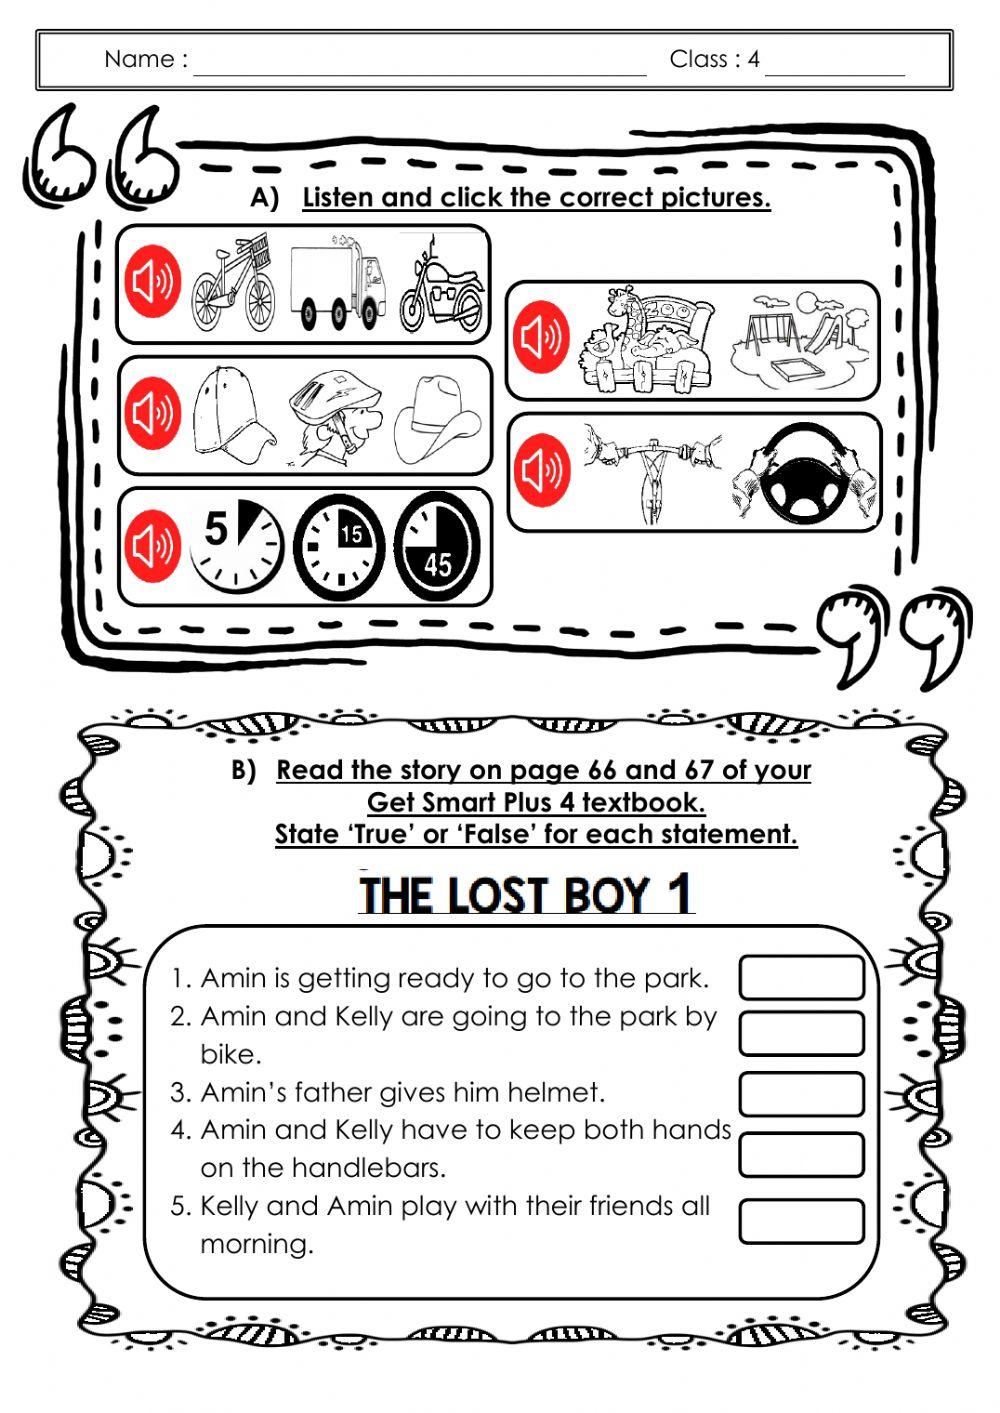 CEFR Y4 Module 6 : The Lost Boy 1